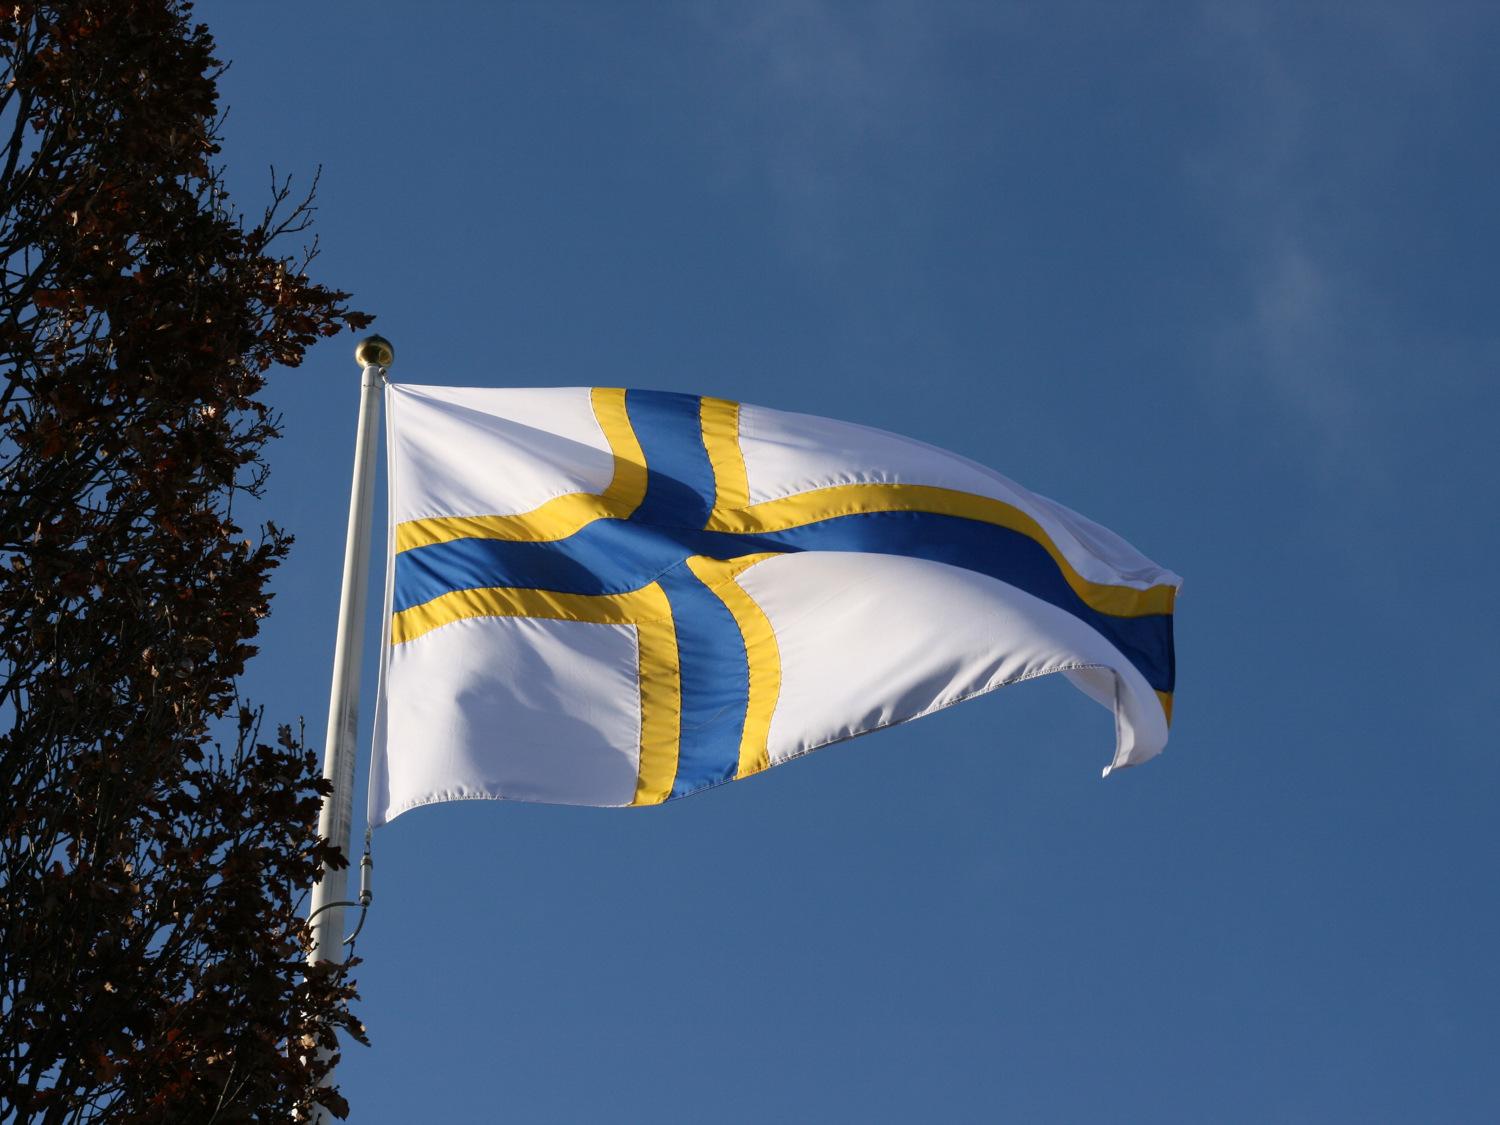 Den sverigefinska flaggan vajrar mot en himmelblå bakgrund. Svenskfinska flaggan består av vita, gula och blåa färger.